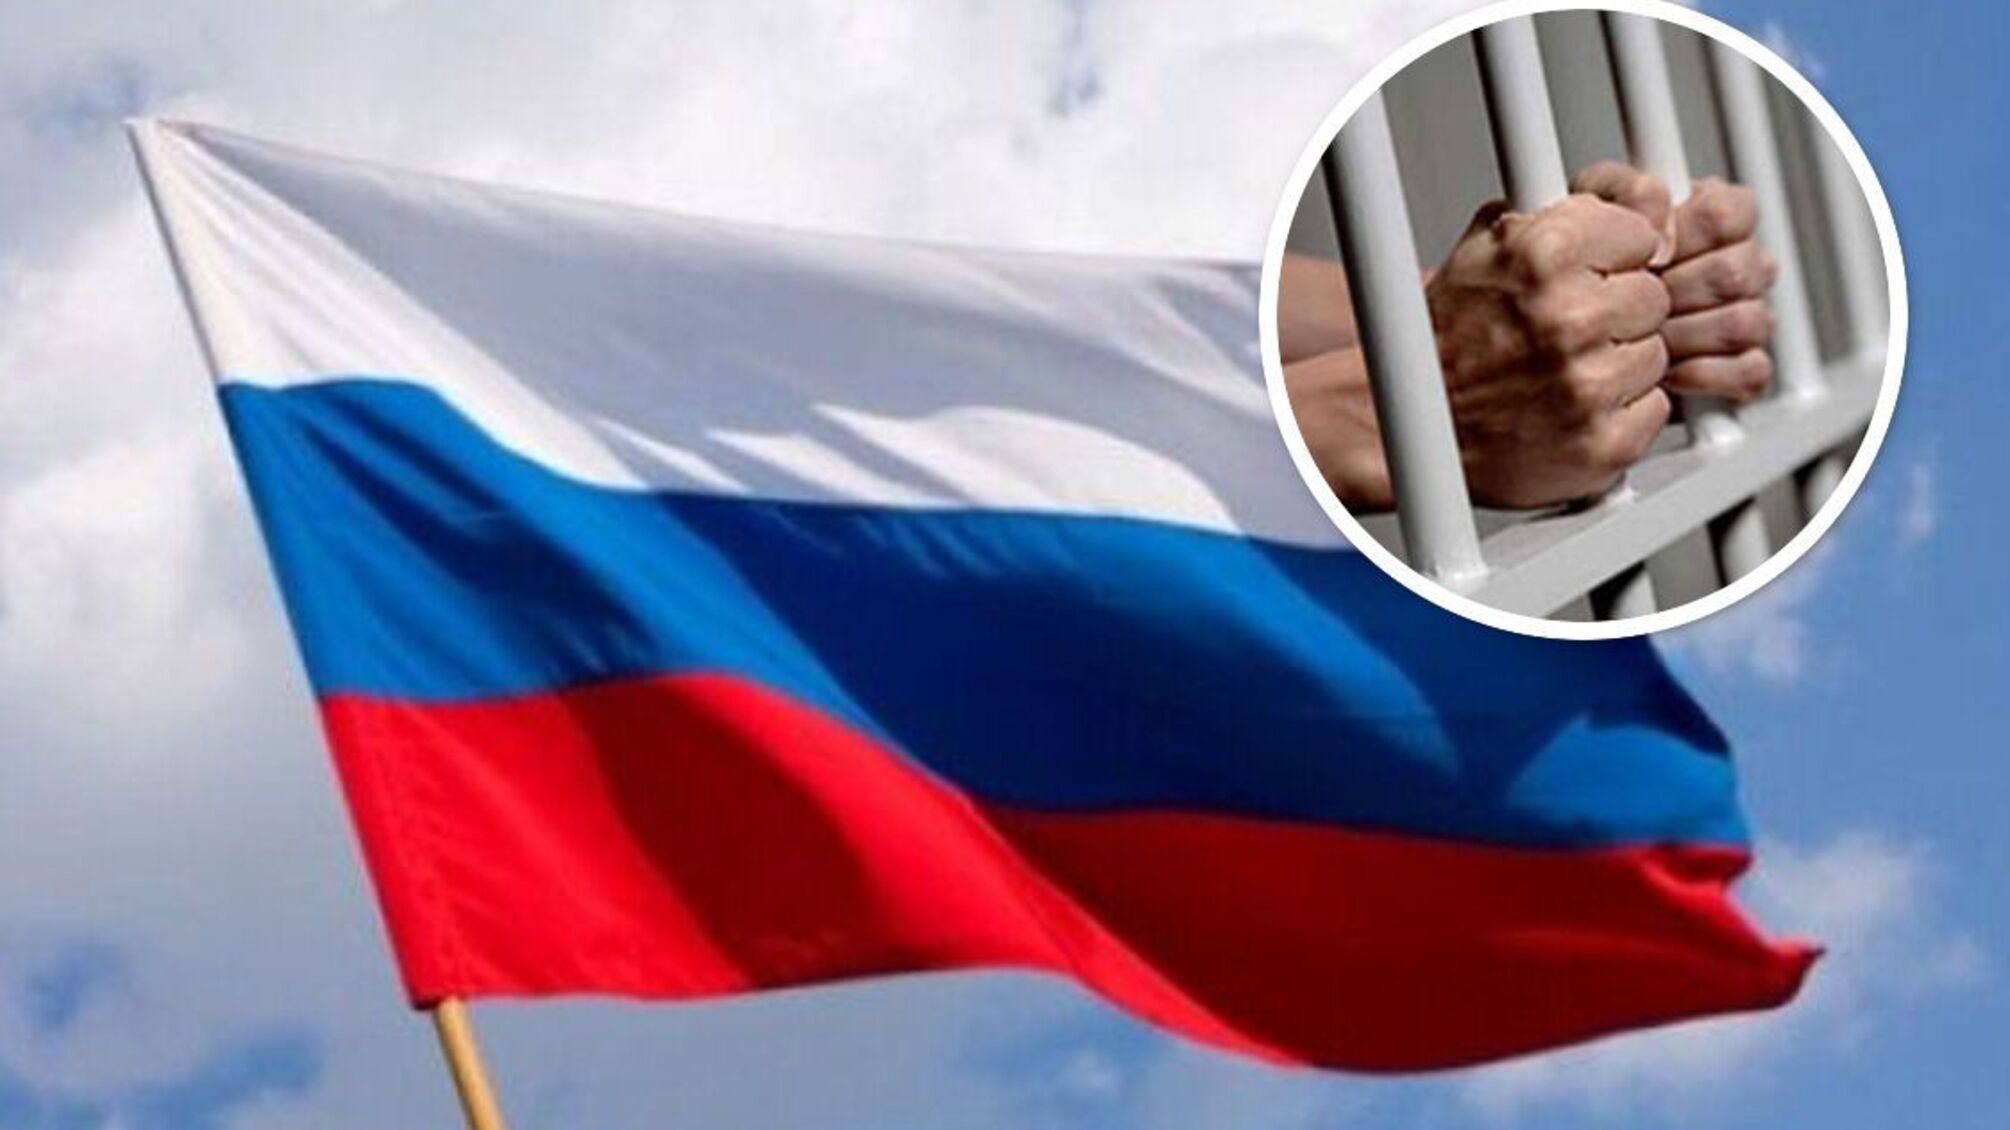 задержание через российский флаг в Украине